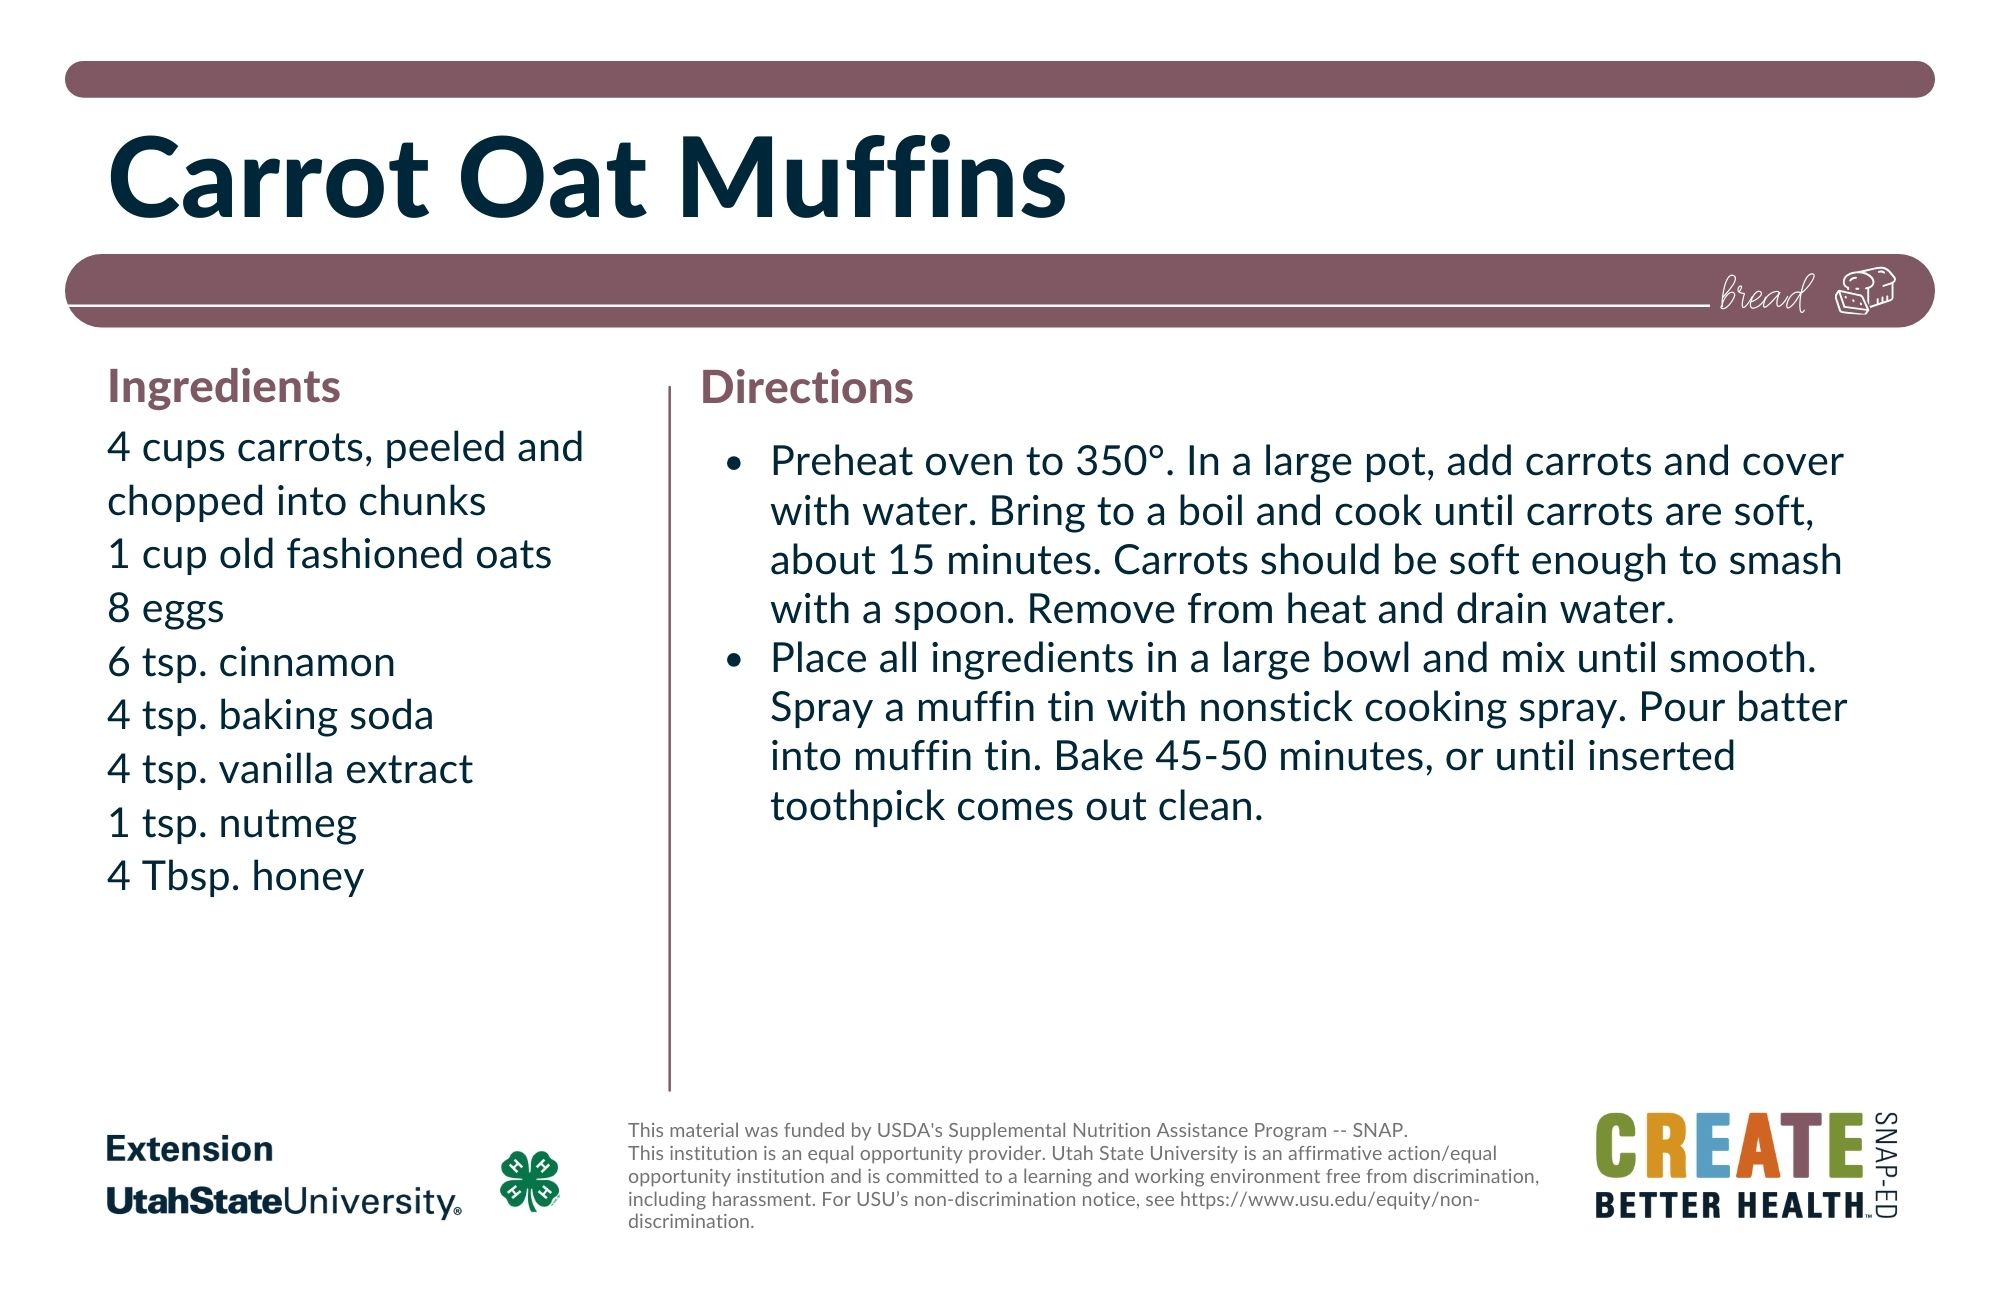 carrot oat muffin recipe card